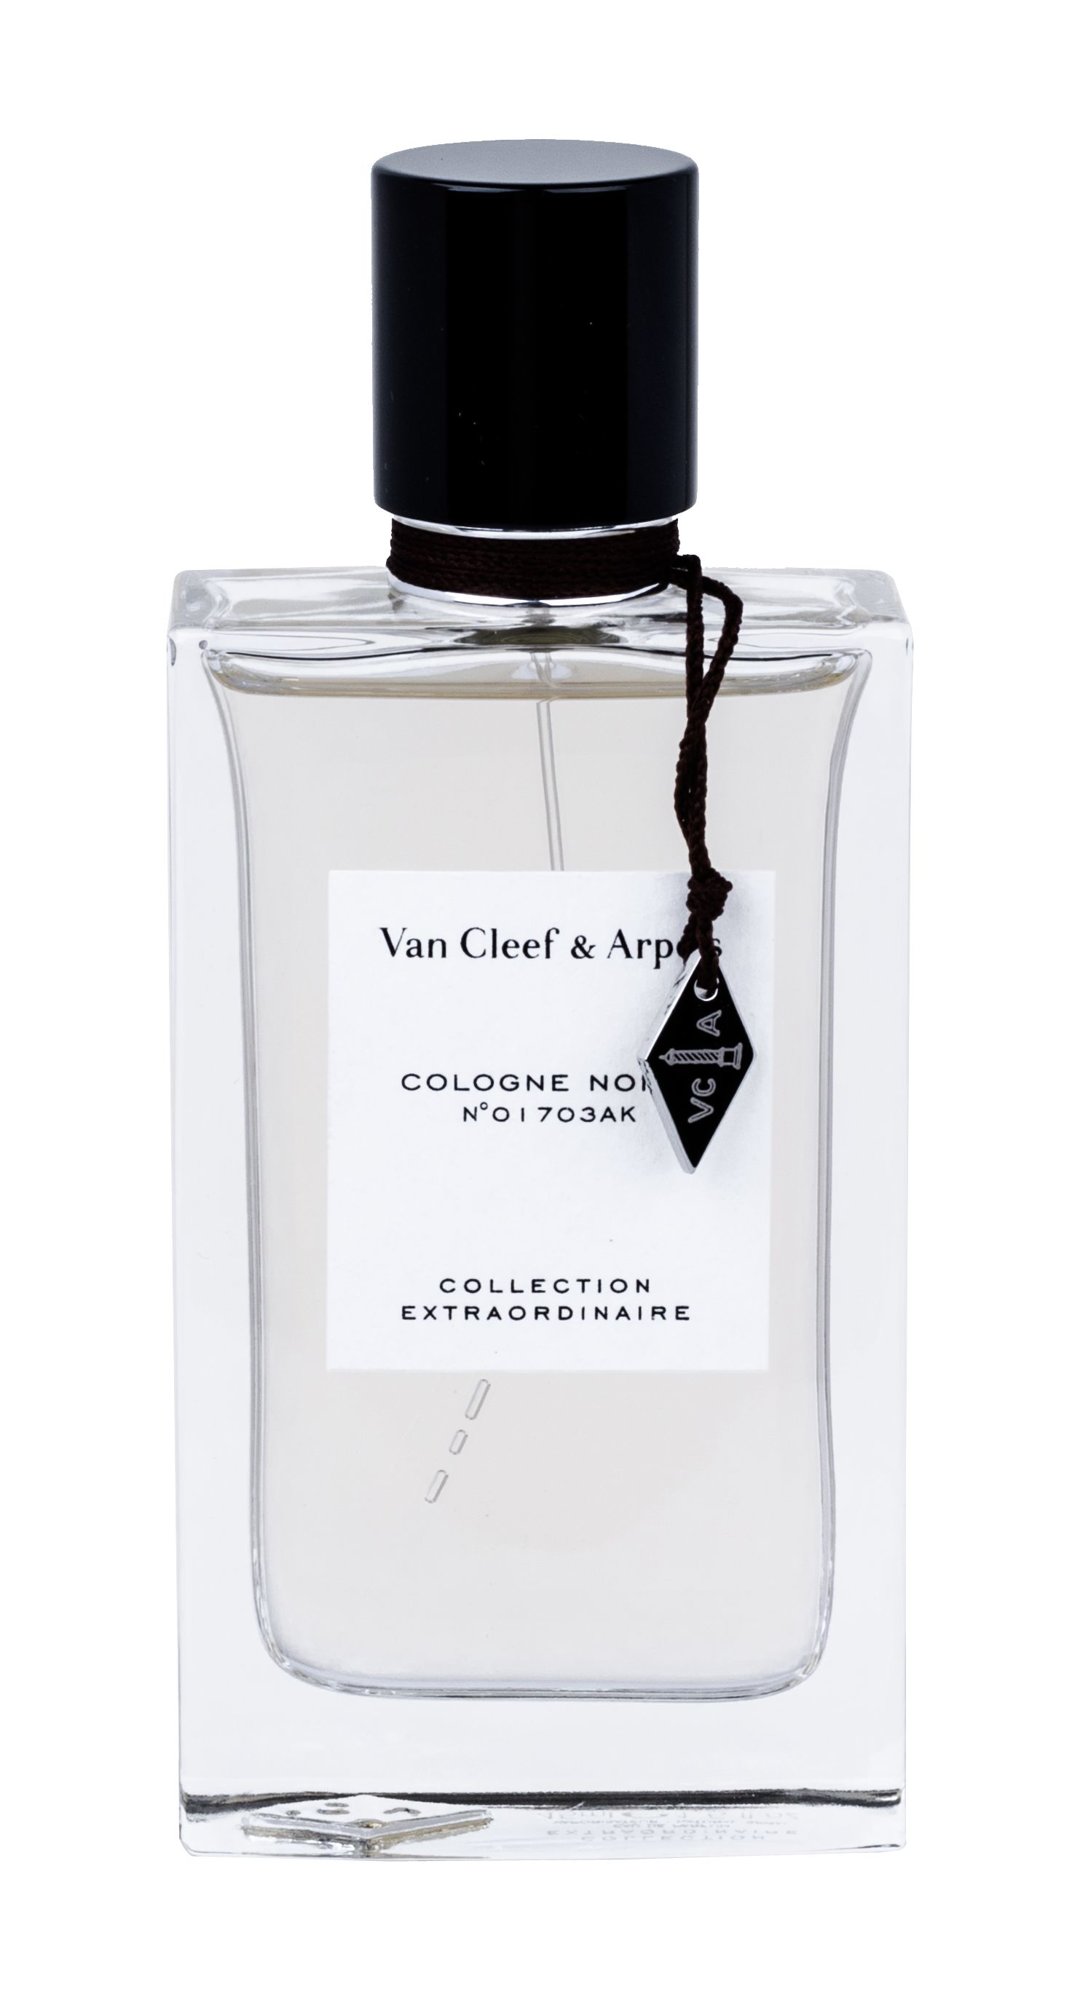 Van Cleef & Arpels Collection Extraordinaire Cologne Noire NIŠINIAI Kvepalai Unisex